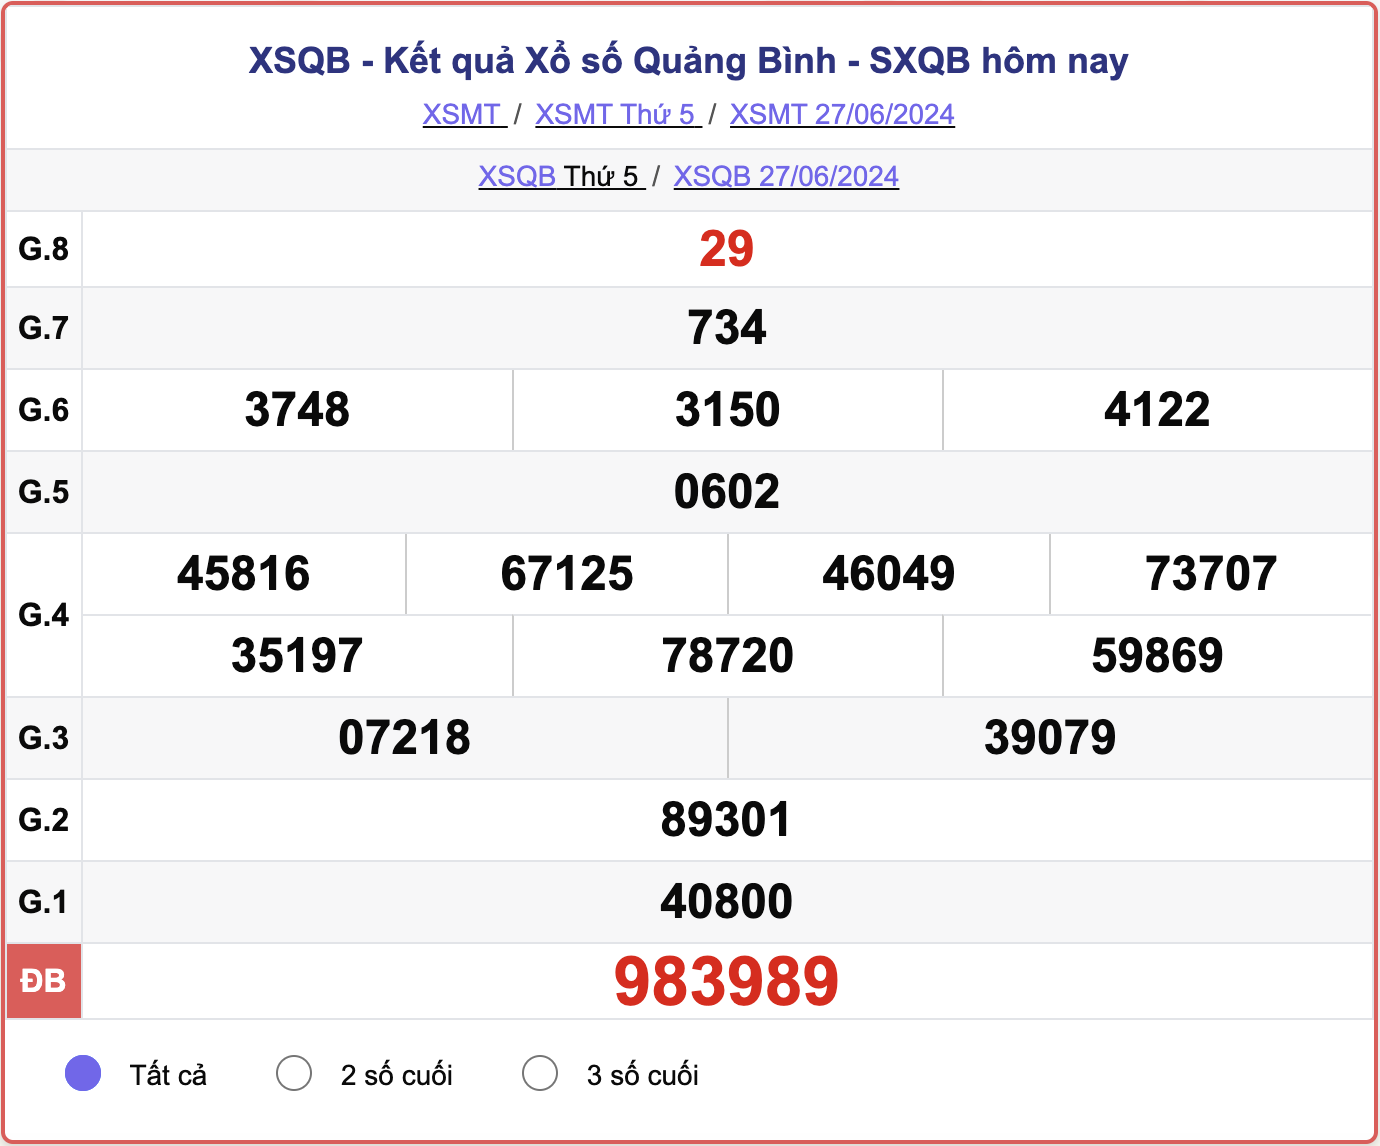 XSQB 27/6, kết quả xổ số Quảng Bình hôm nay 27/6/2024.